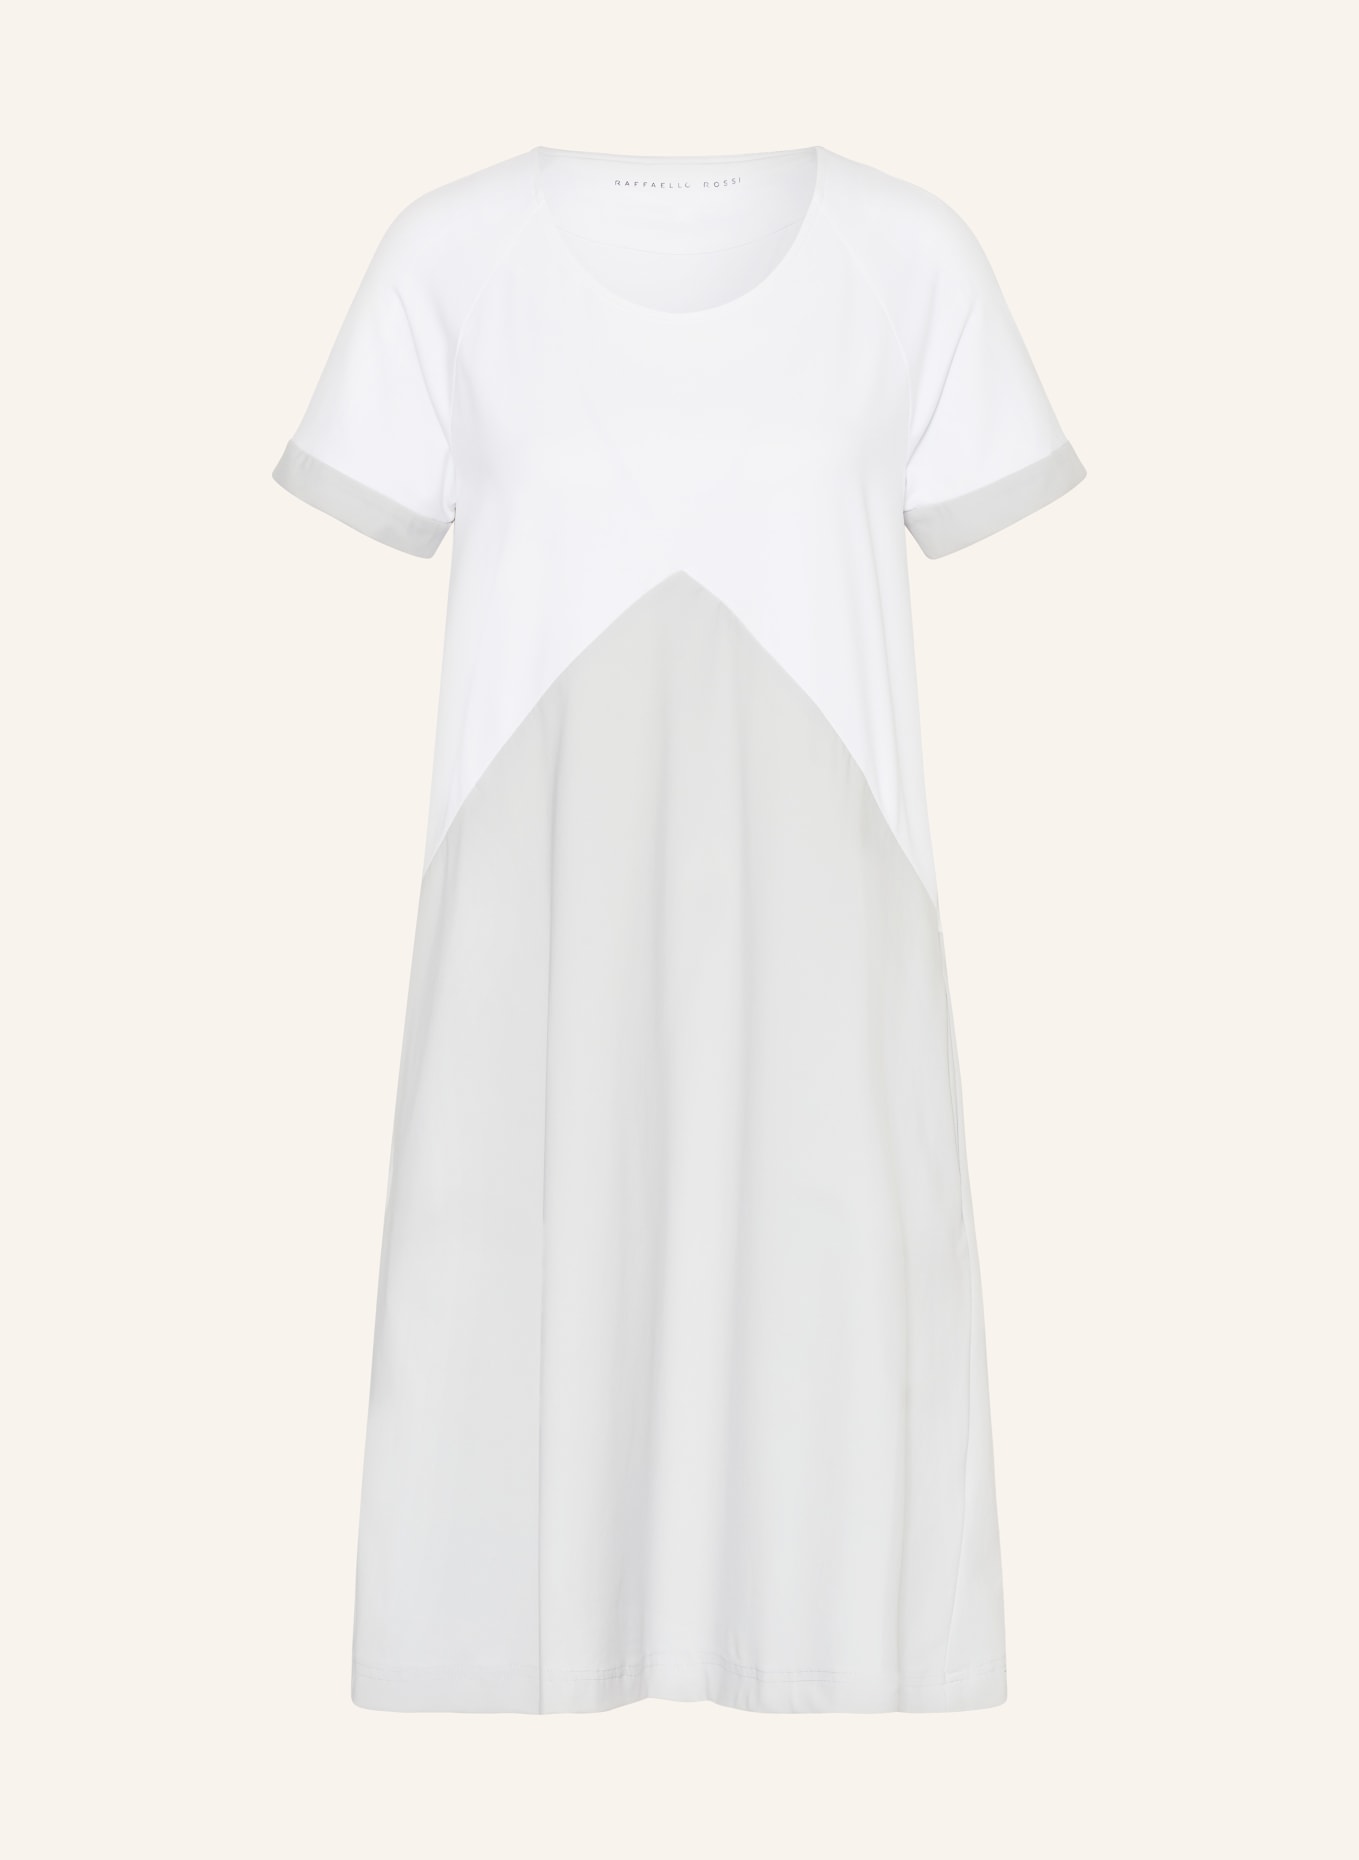 RAFFAELLO ROSSI Dress GOBINA in mixed materials, Color: WHITE/ LIGHT GRAY (Image 1)